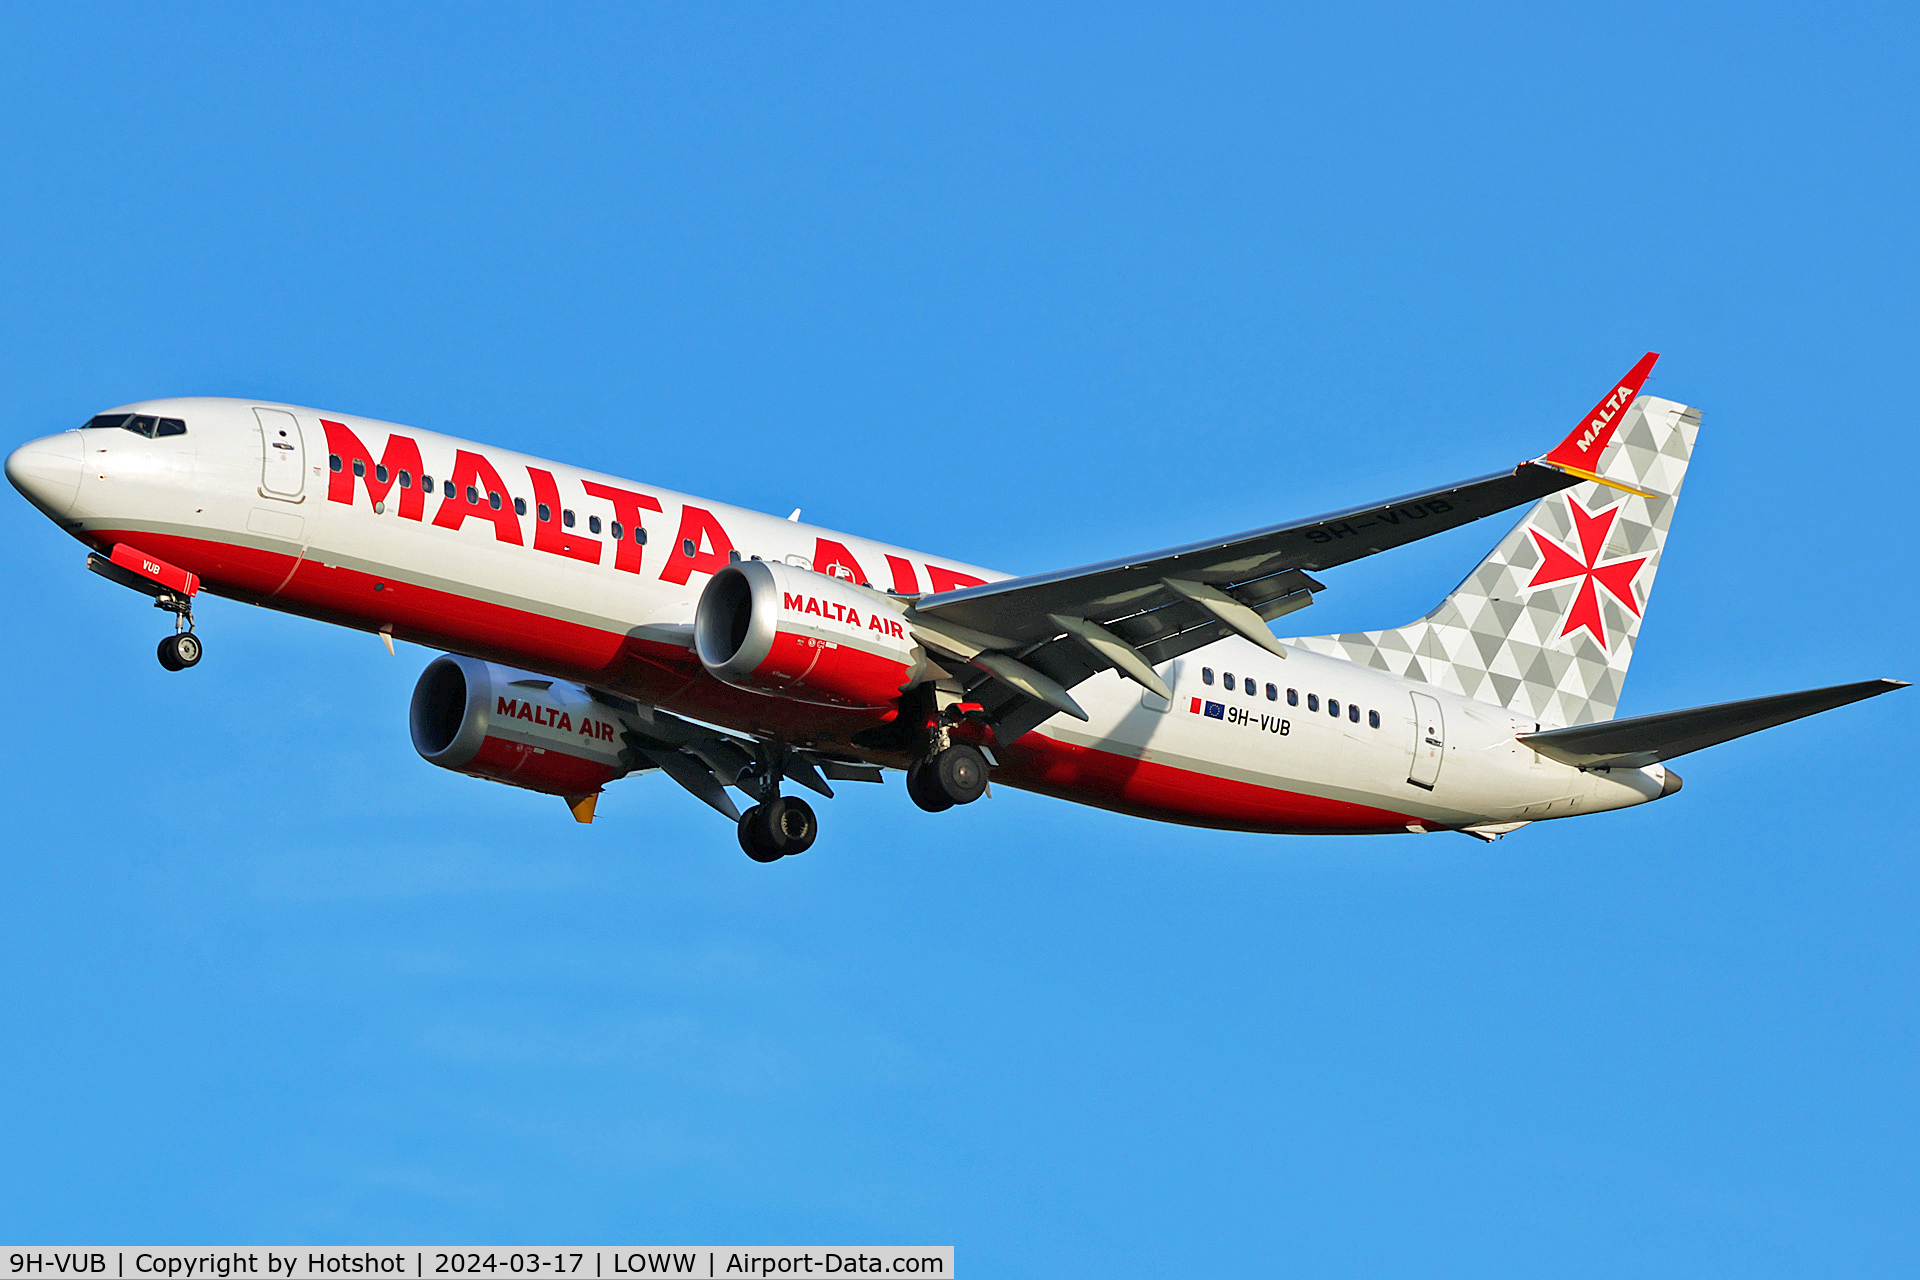 9H-VUB, 2021 Boeing 737-8-200 MAX C/N 65877, Malta Air livery; very nice colours